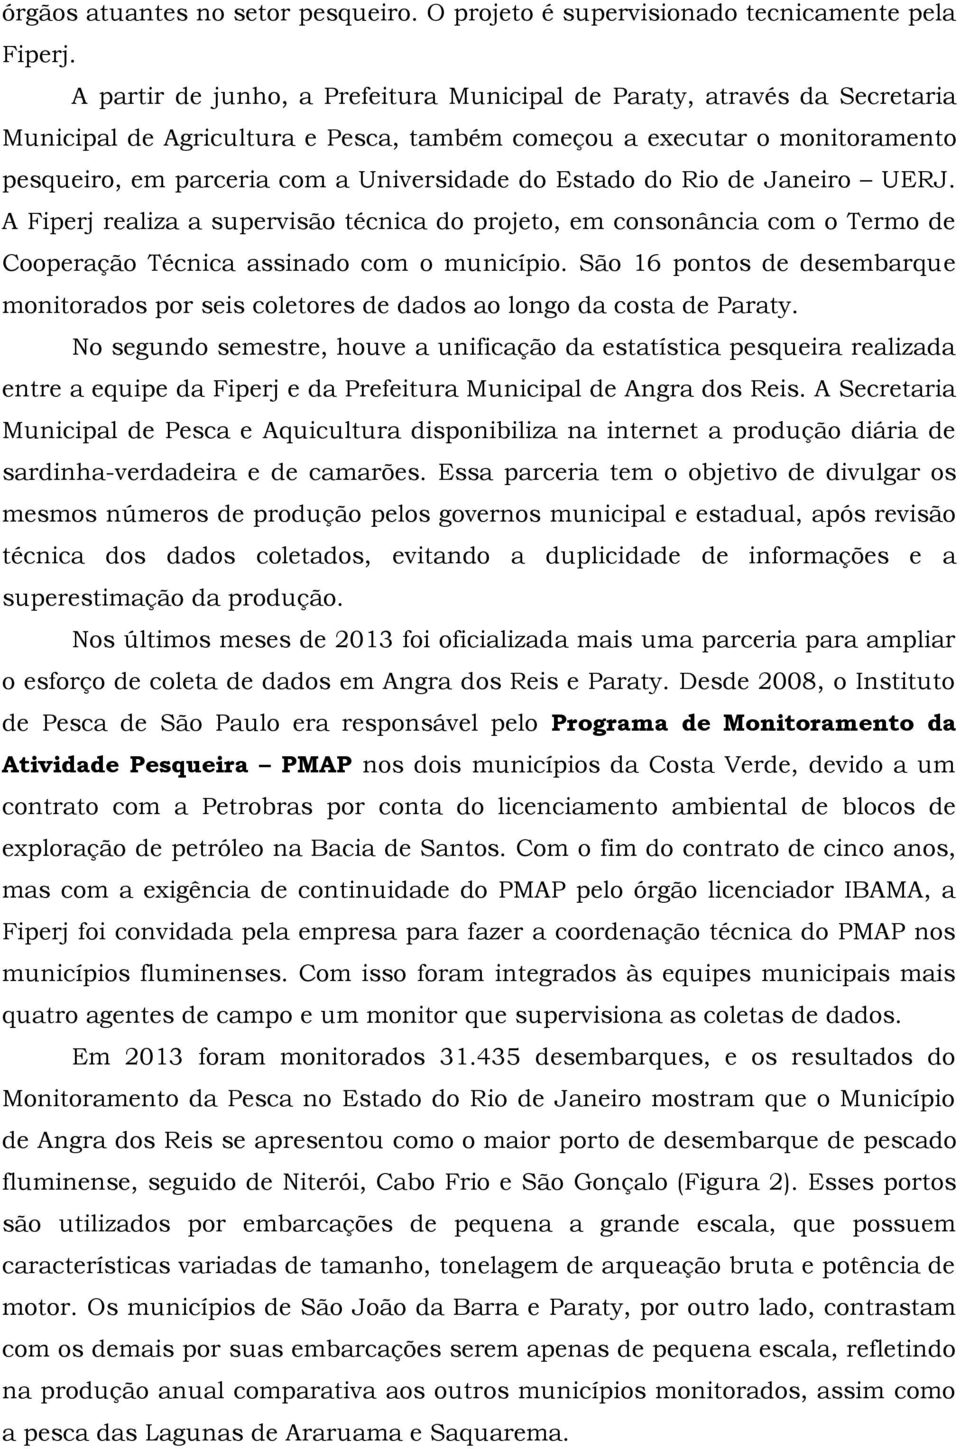 Estado do Rio de Janeiro UERJ. A Fiperj realiza a supervisão técnica do projeto, em consonância com o Termo de Cooperação Técnica assinado com o município.